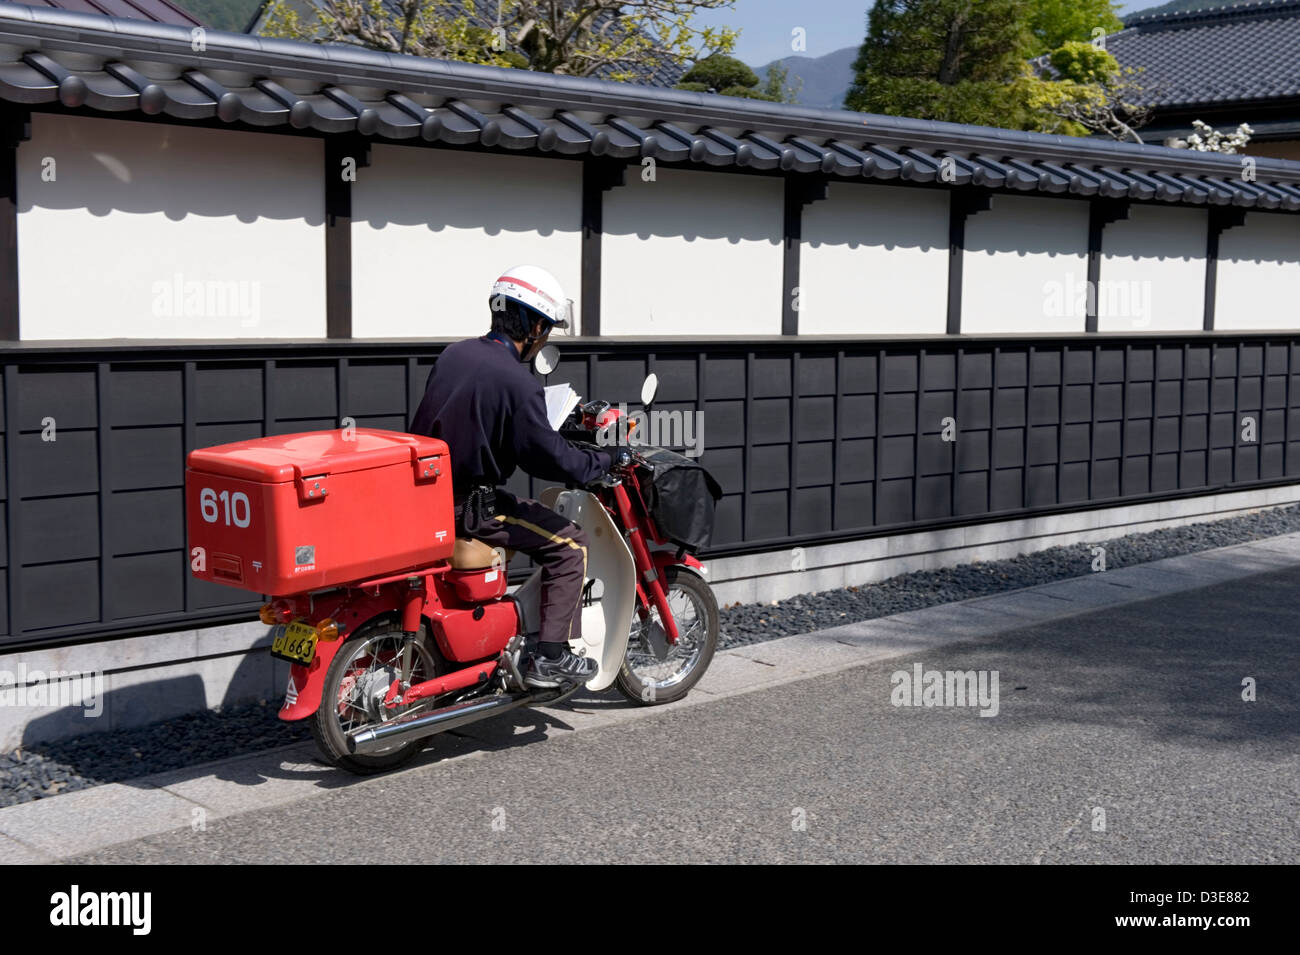 Un scooter rouge typique utilisé par le système postal japonais pour livrer le courrier dans tout le pays. Banque D'Images